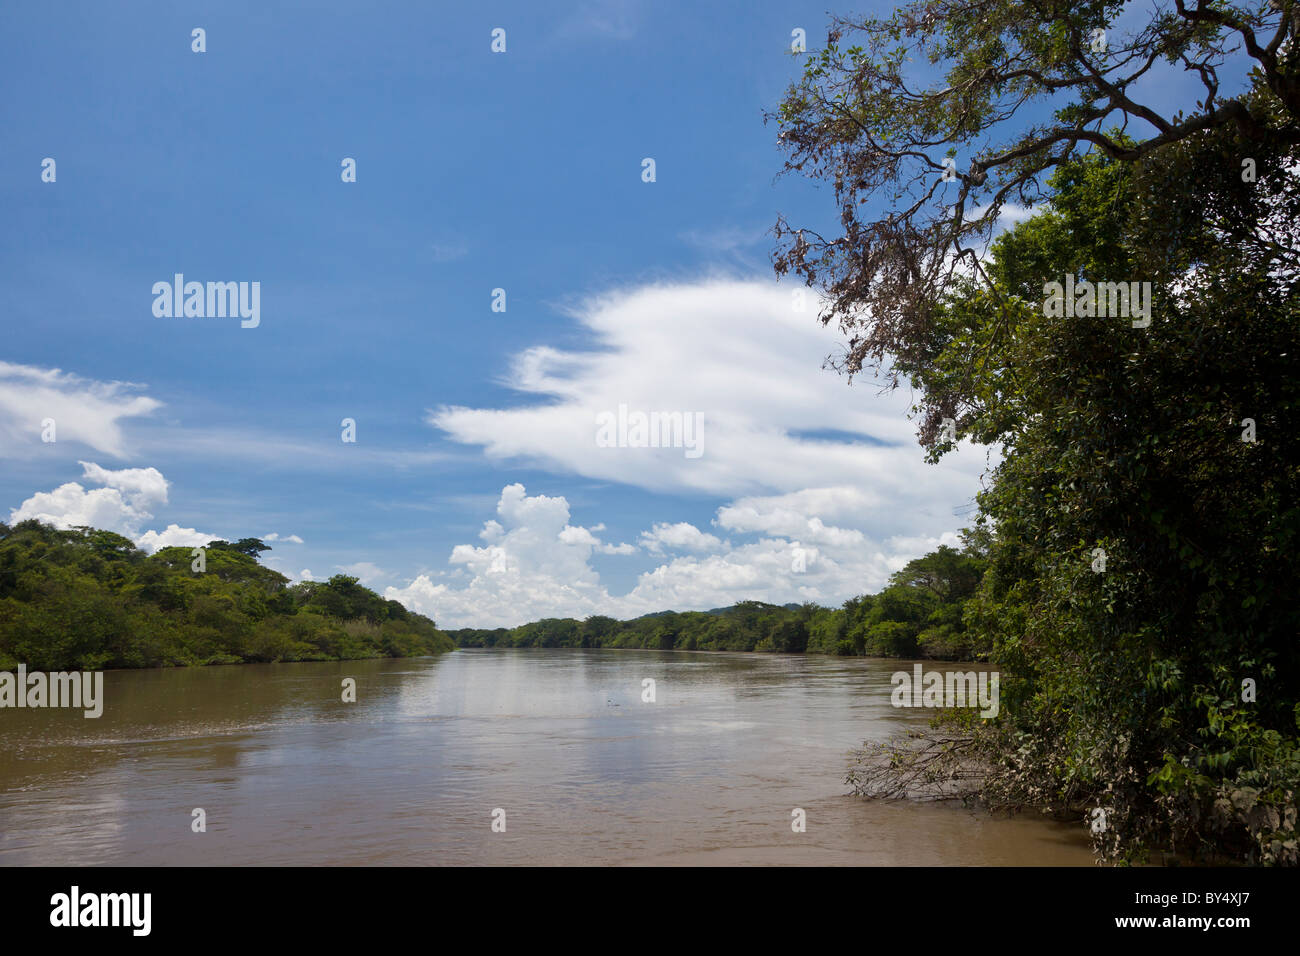 Die Tempisque Fluss fließt durch Palo Verde Nationalpark in Guanacaste Provinz von Costa Rica. Stockfoto